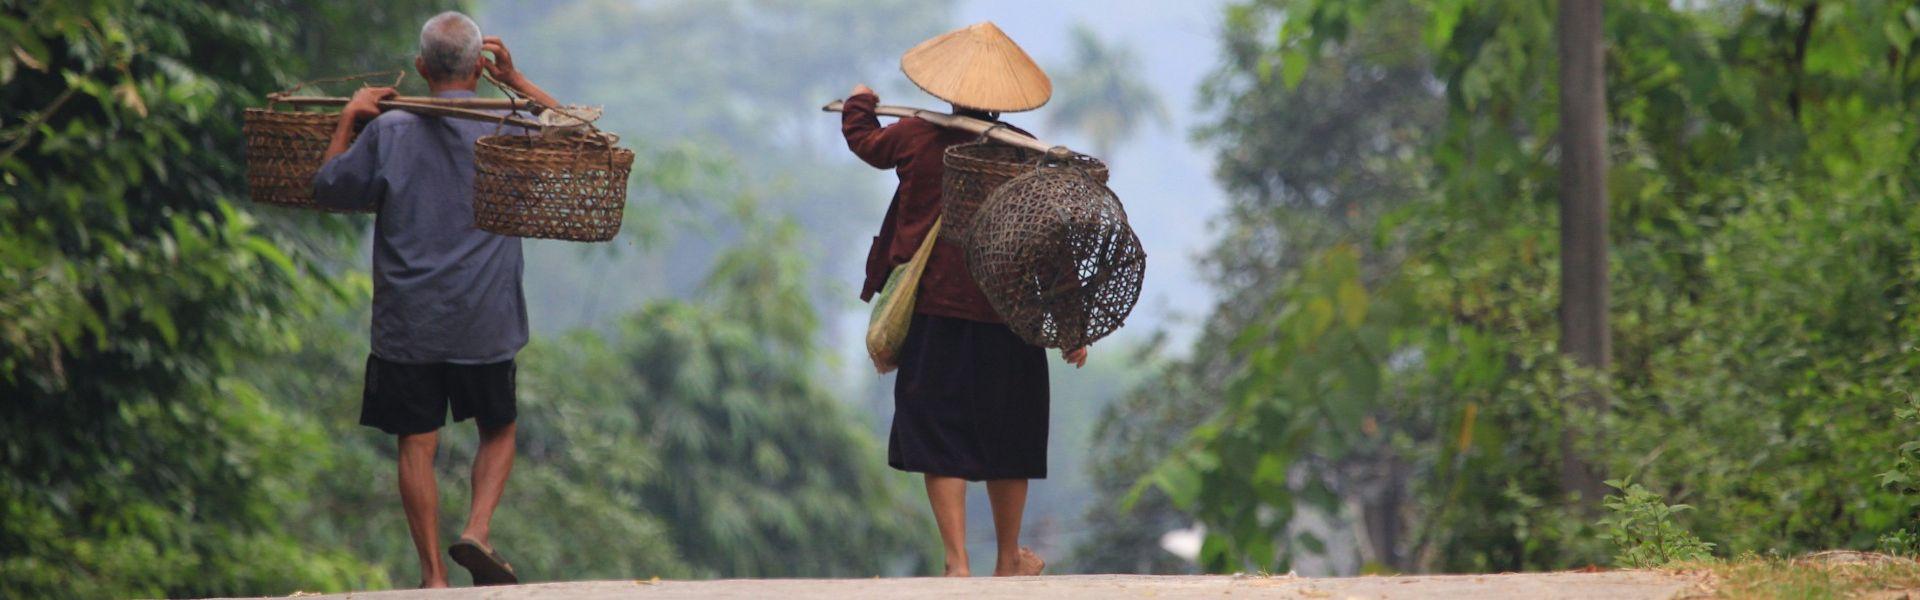 Ha Giang : Guide de voyage complet du Nord-Est Vietnam